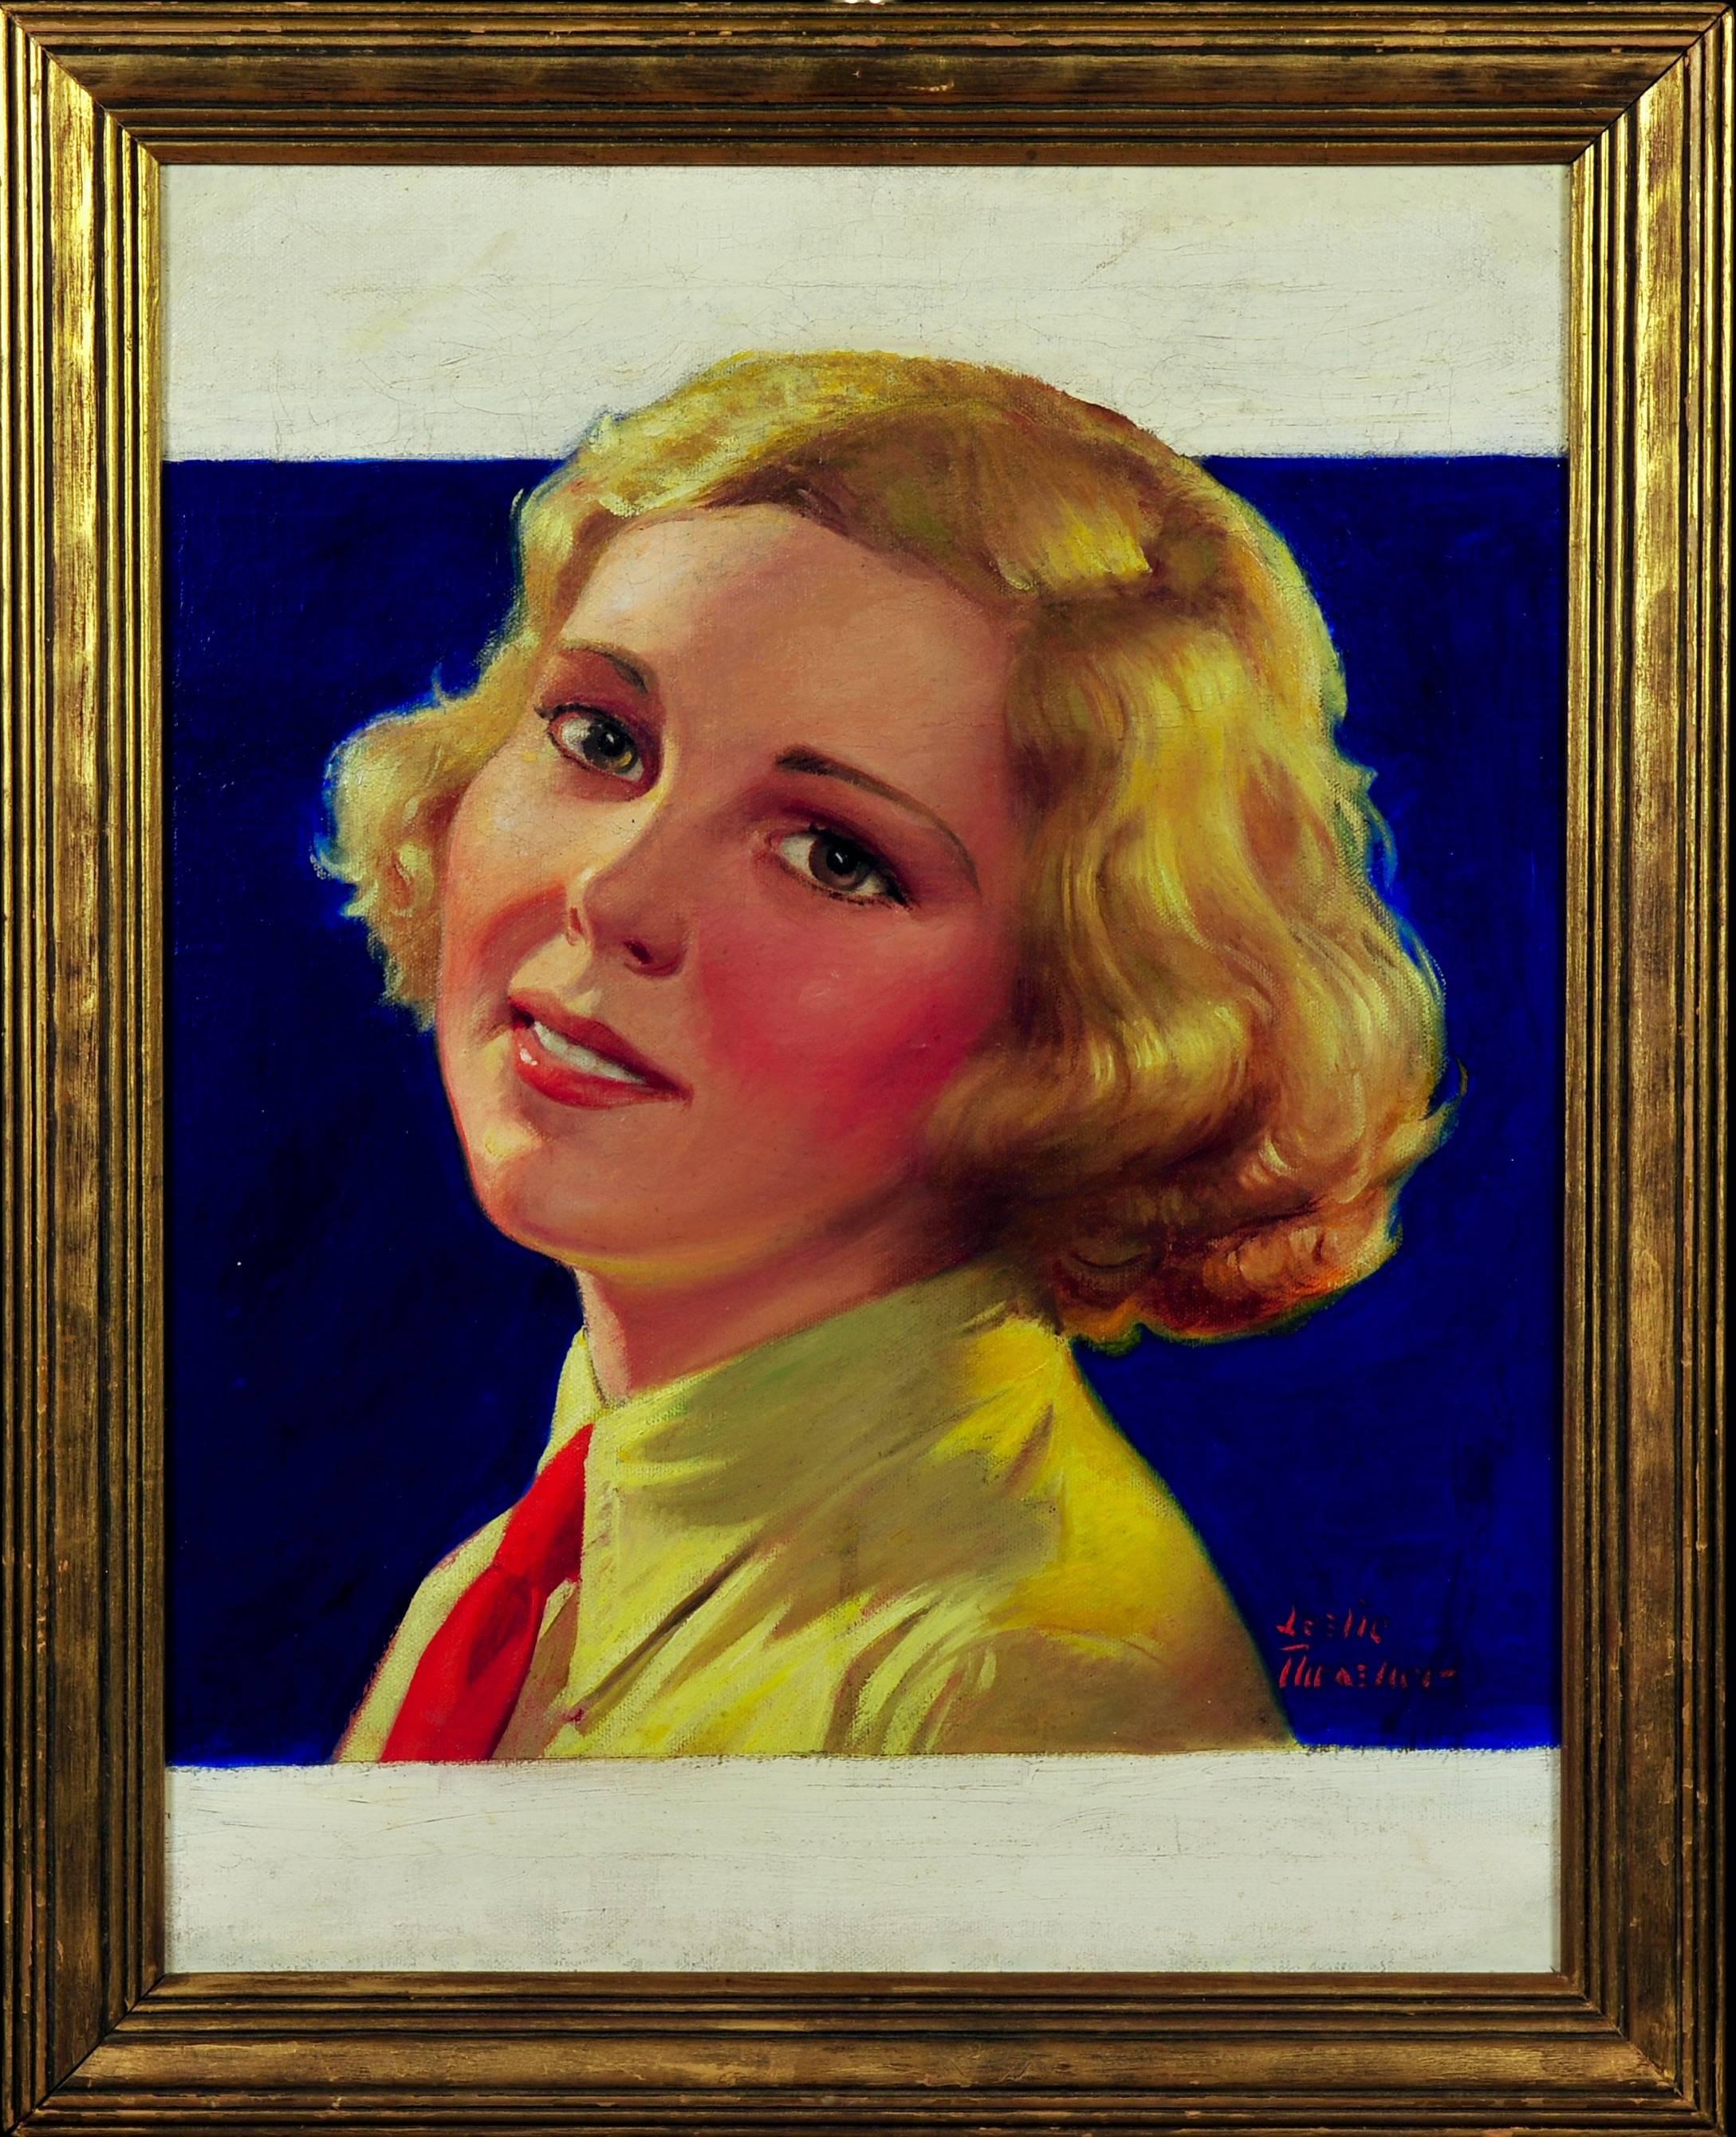 La couverture du magazine Liberty, 1 octobre 1932 - Painting de Leslie Thrasher